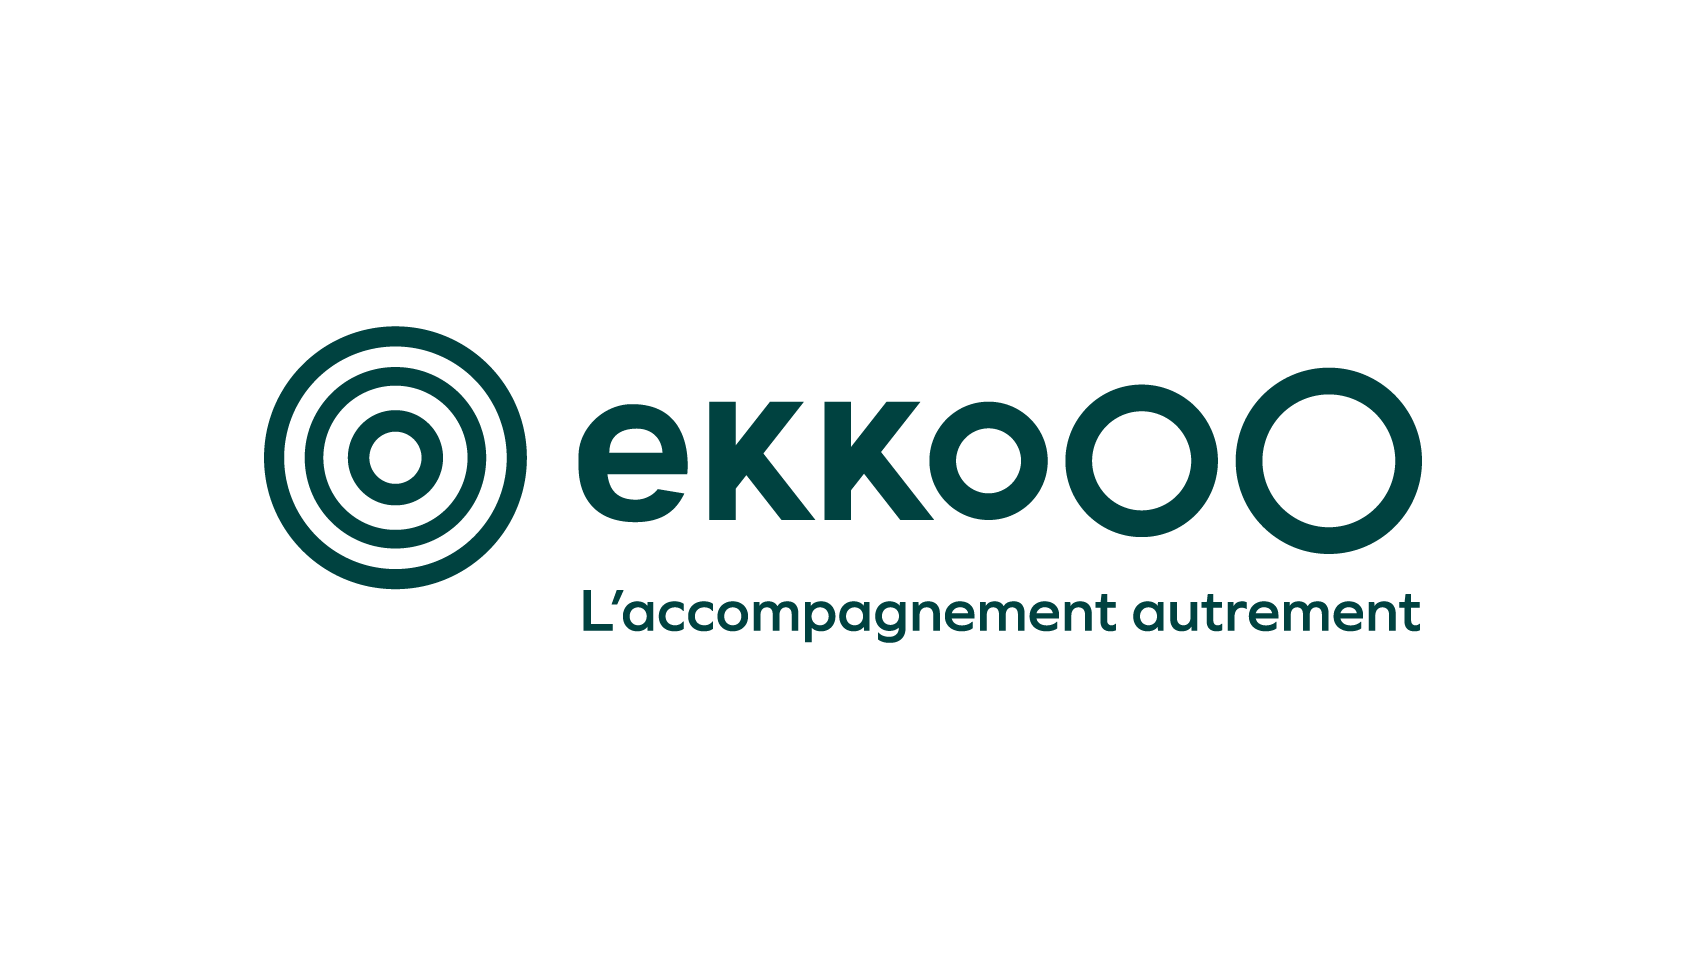 ekkooo - coaching and training - logo light vert